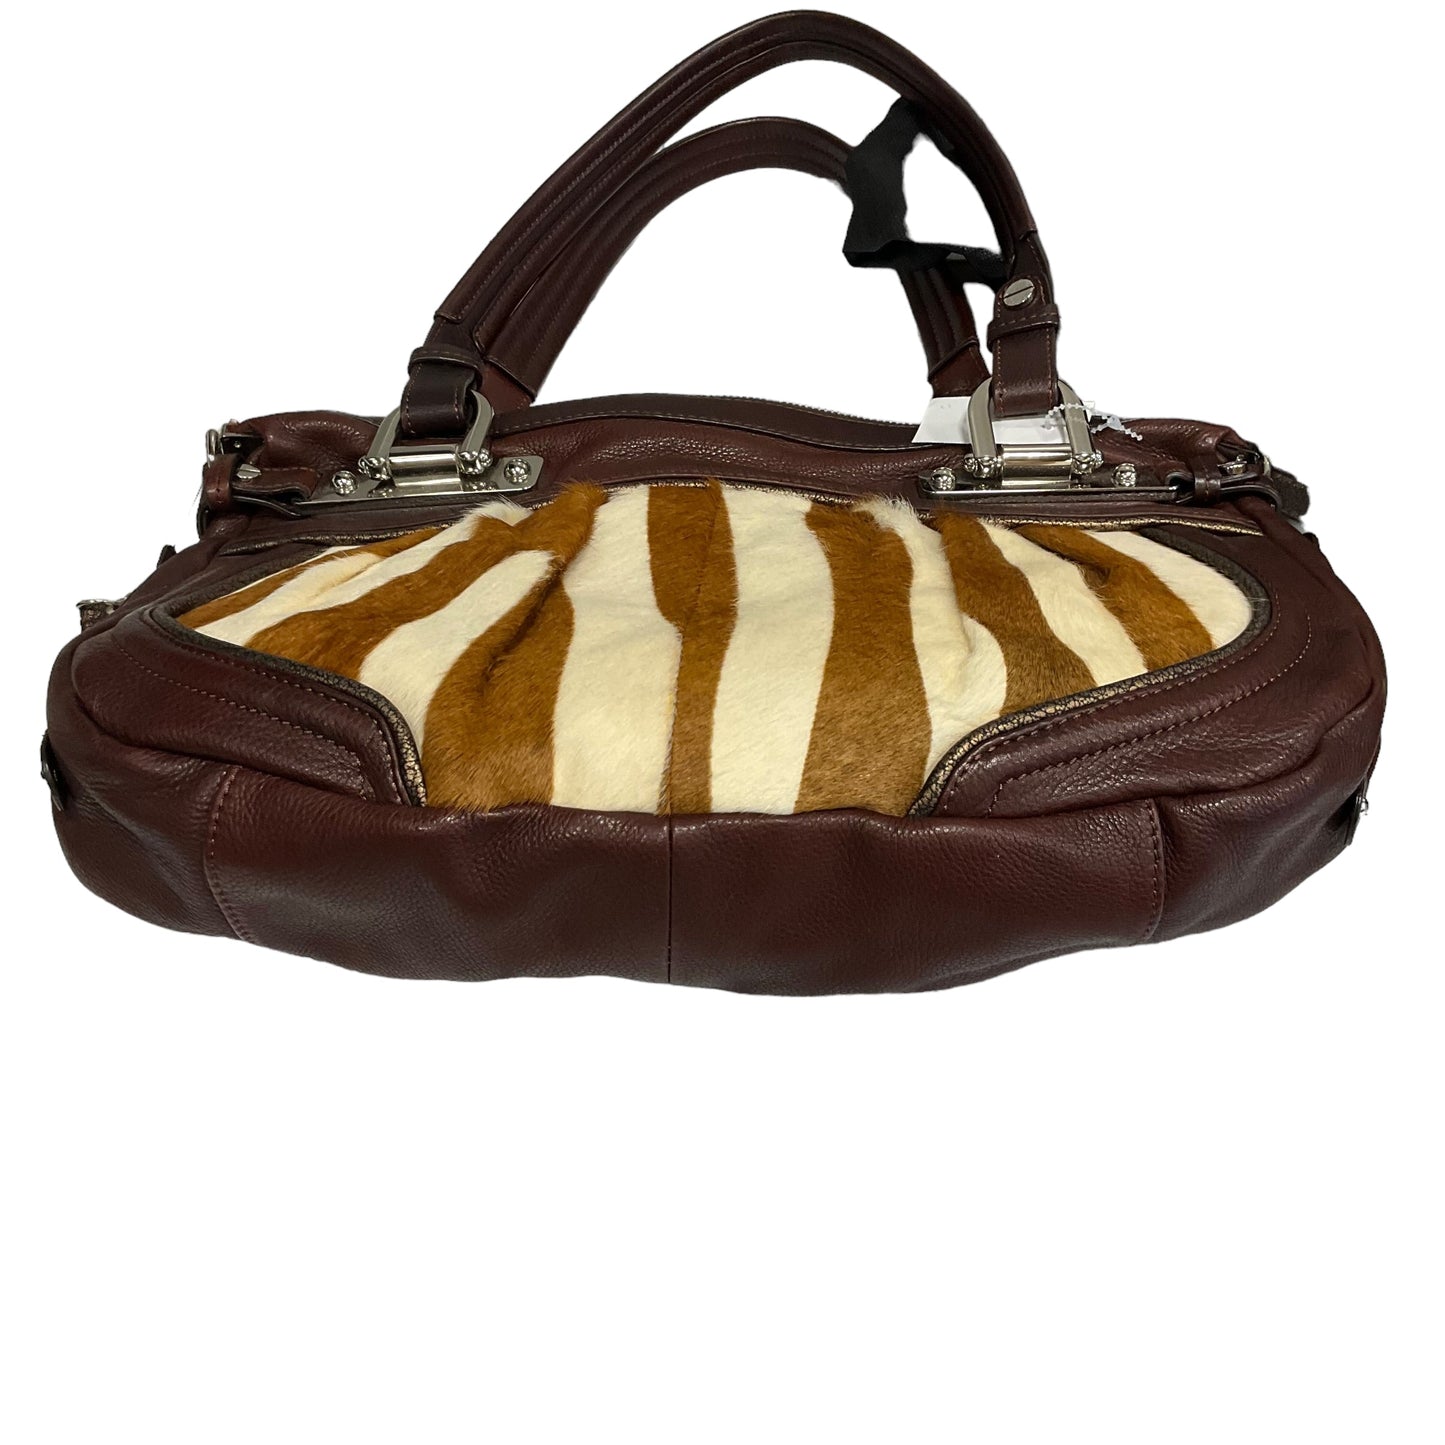 Handbag Designer By B Makowsky  Size: Medium